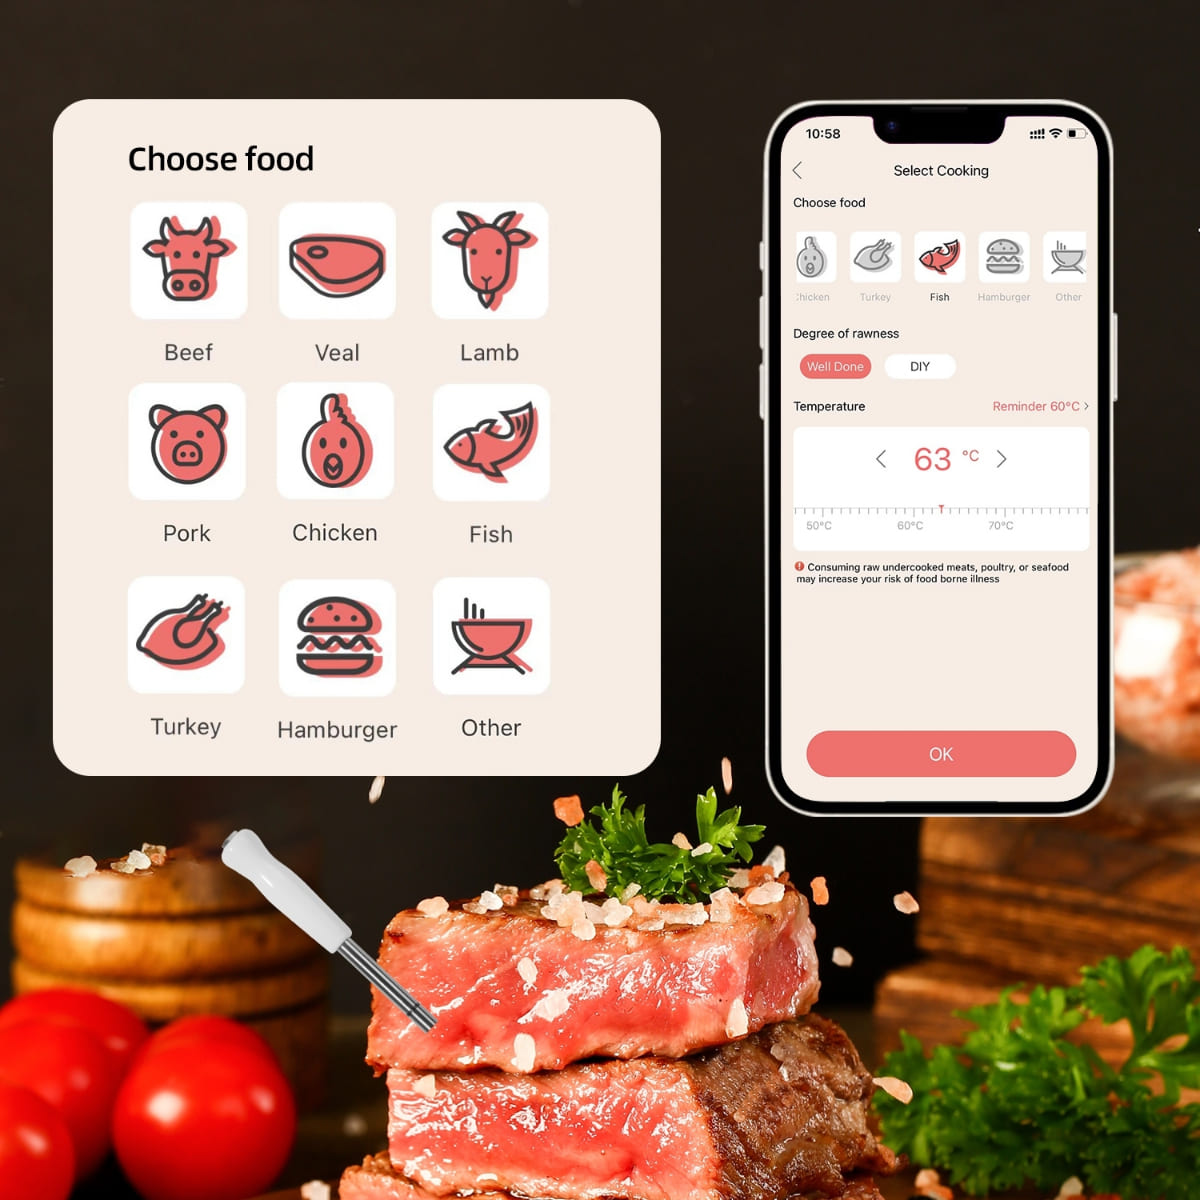 Termometar za pečenje mesa - bluetooth podrška do 100m (mobilna aplikacija)